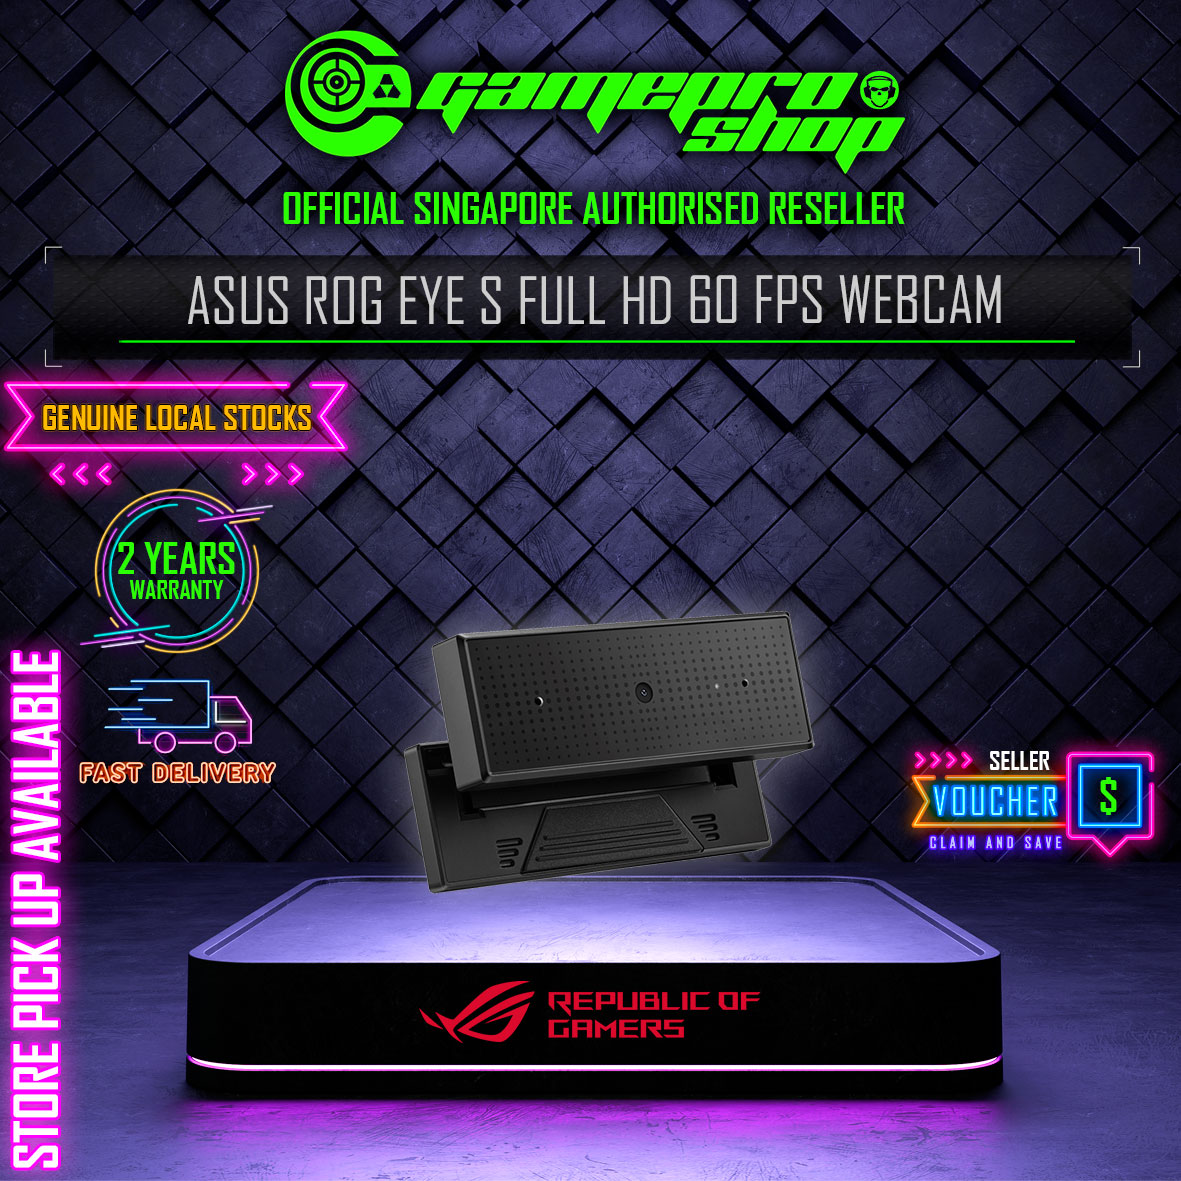 HD ASUS Shop – S GamePro Webcam fps 60 Full ROG Eye (2Y)